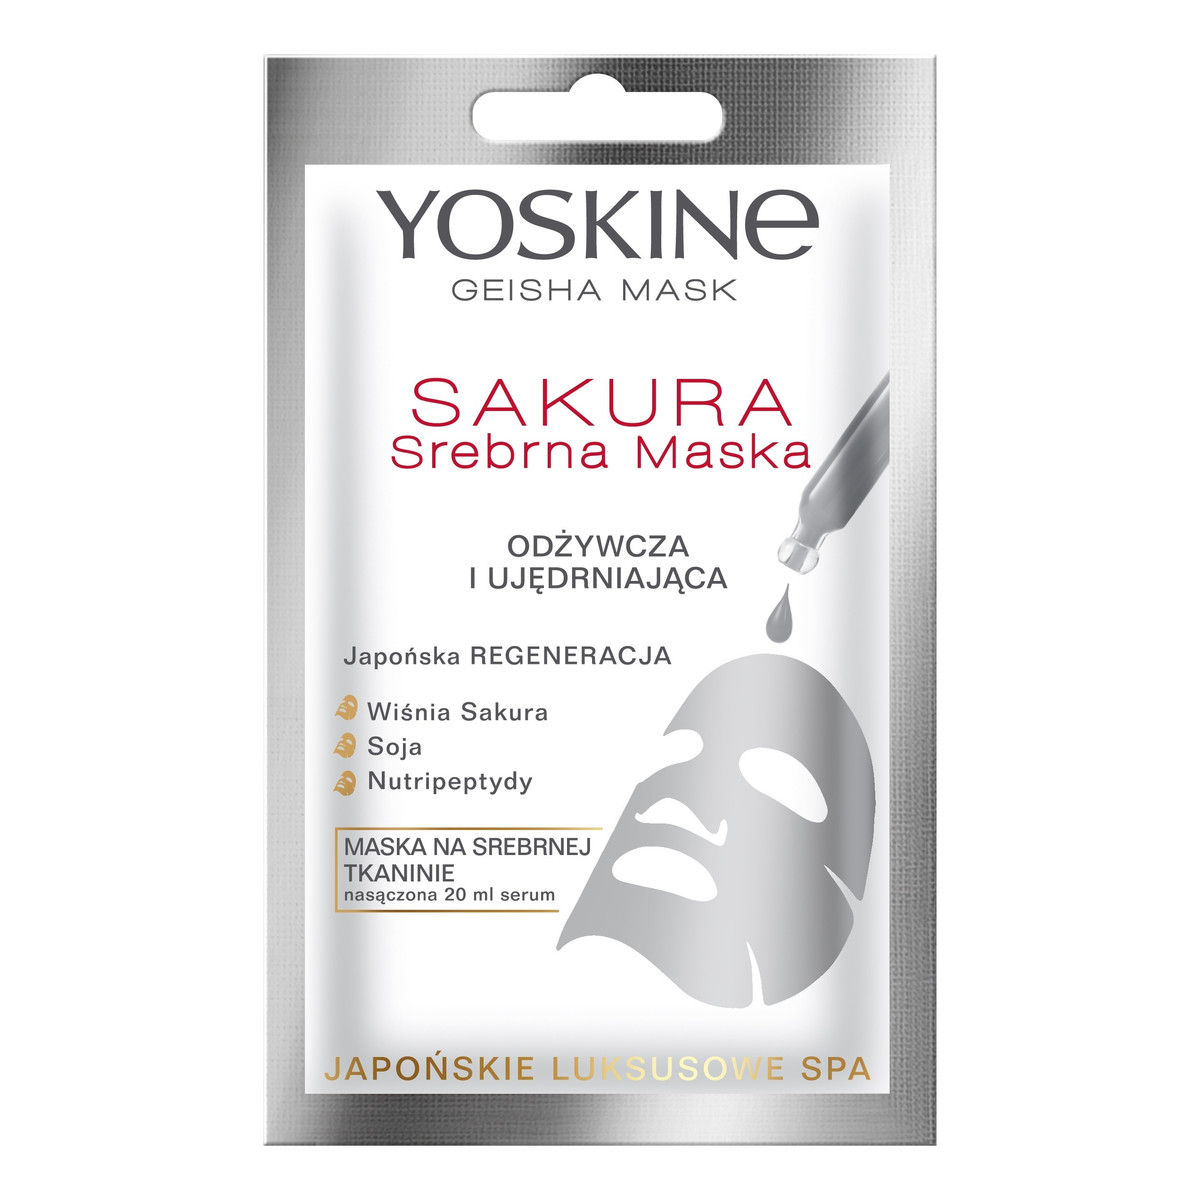 Yoskine Geisha Mask Sakura Srebrna Maska na tkaninie odżywcza i ujędrniająca 20ml